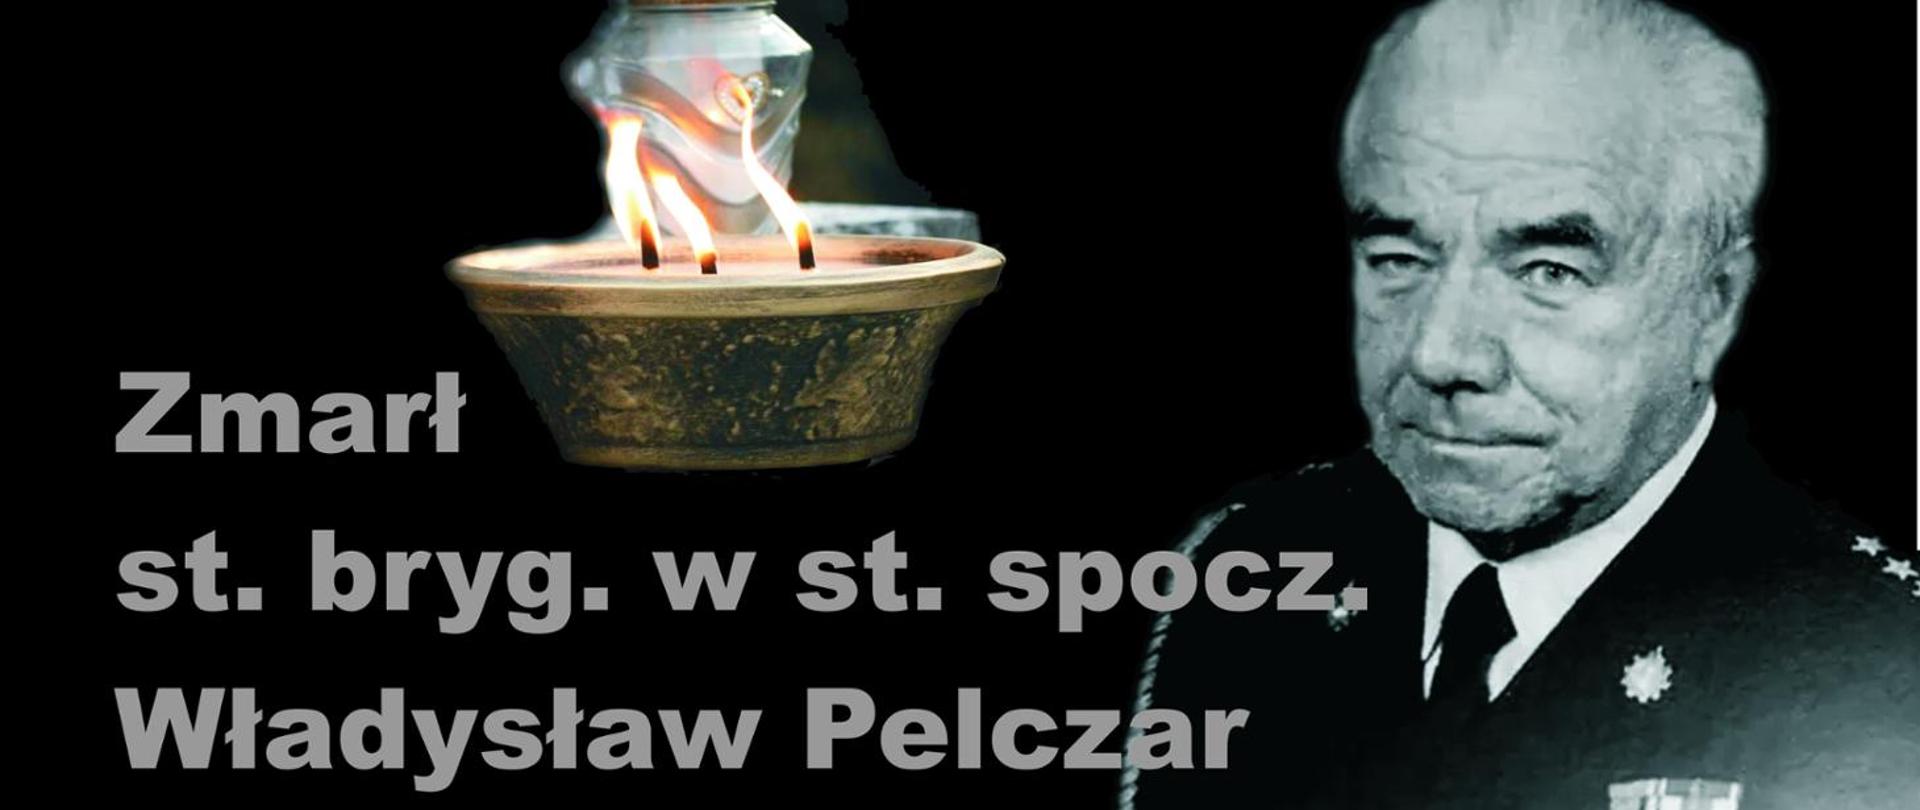 Zdjęcie przedstawia sylwetkę st. bryg. Władysława Pelczara w mundurze galowym. Po prawej stronie jego wizerunku znajduje się komunikat o jego śmierci oraz płonący znicz.